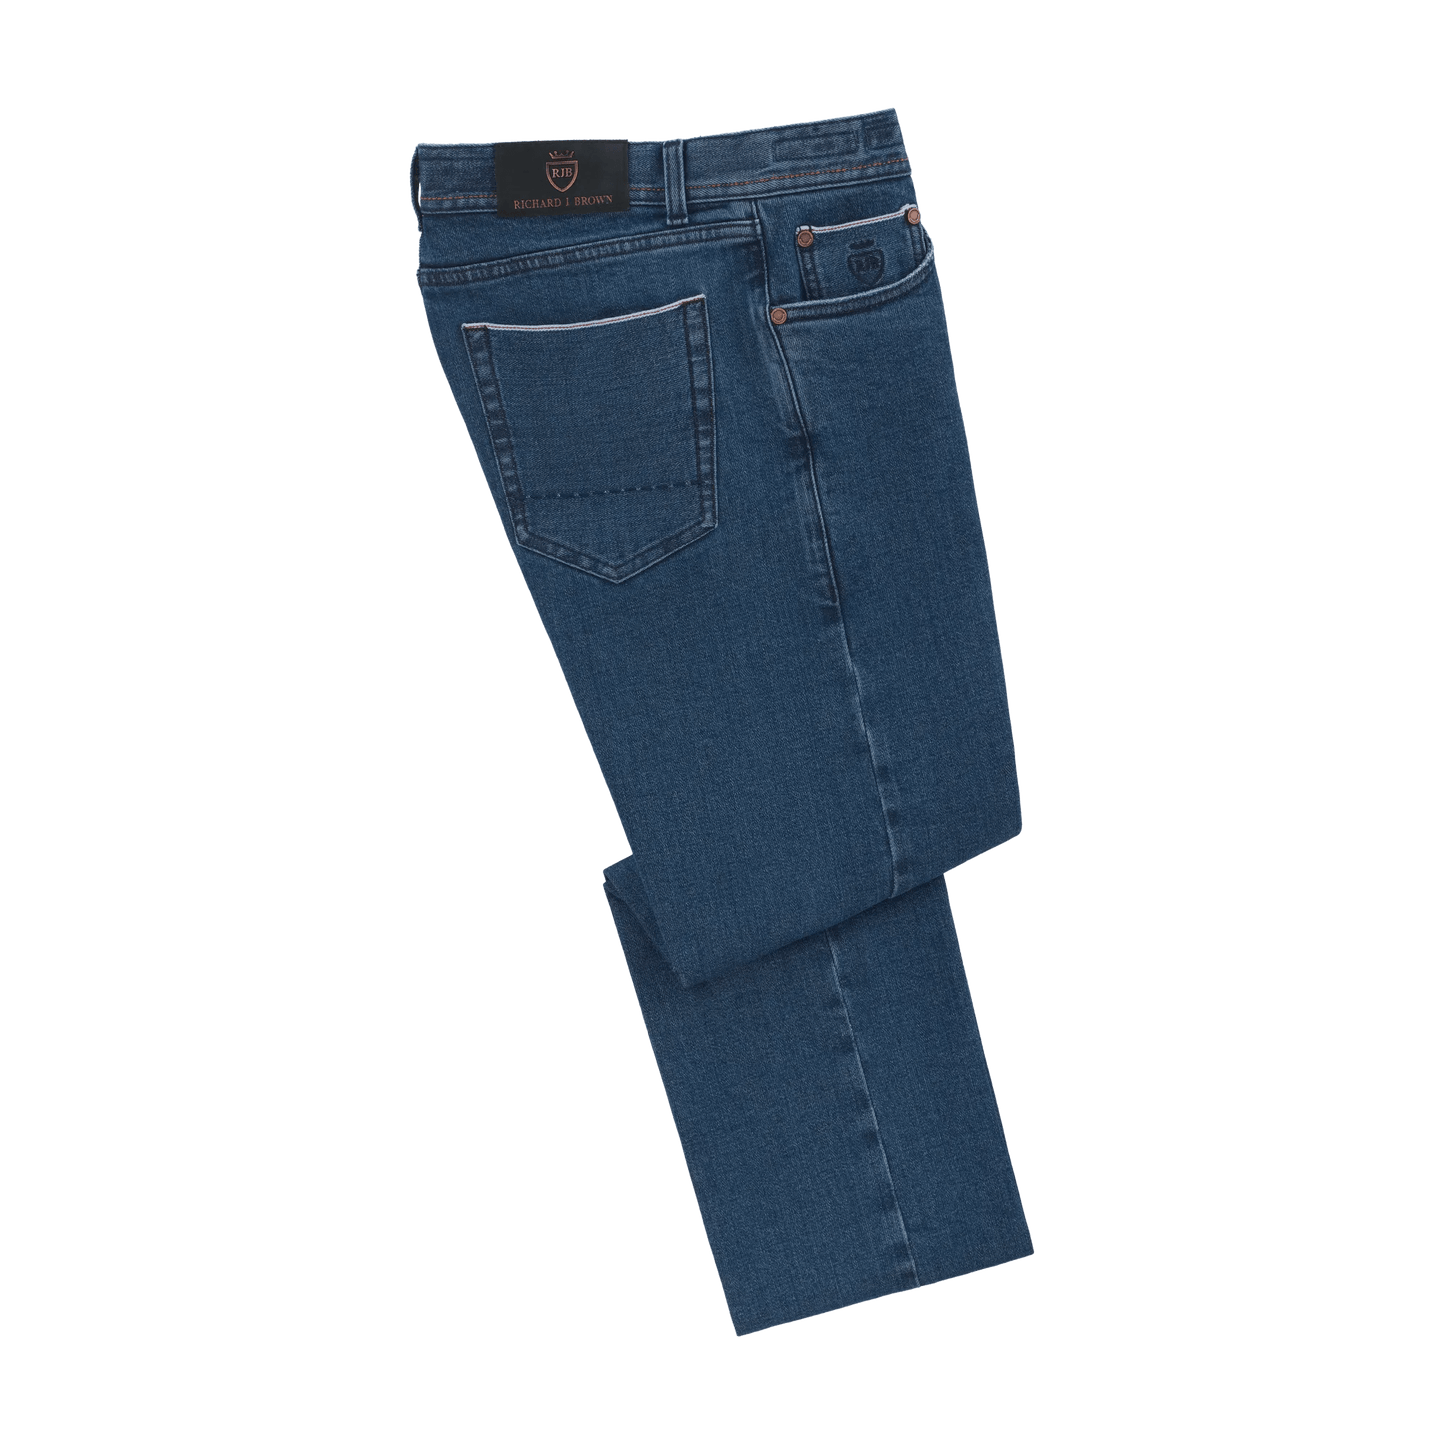 Richard J. Brown Slim - Fit Stretch - Cotton 5 Pocket Jeans in Denim Blue - SARTALE